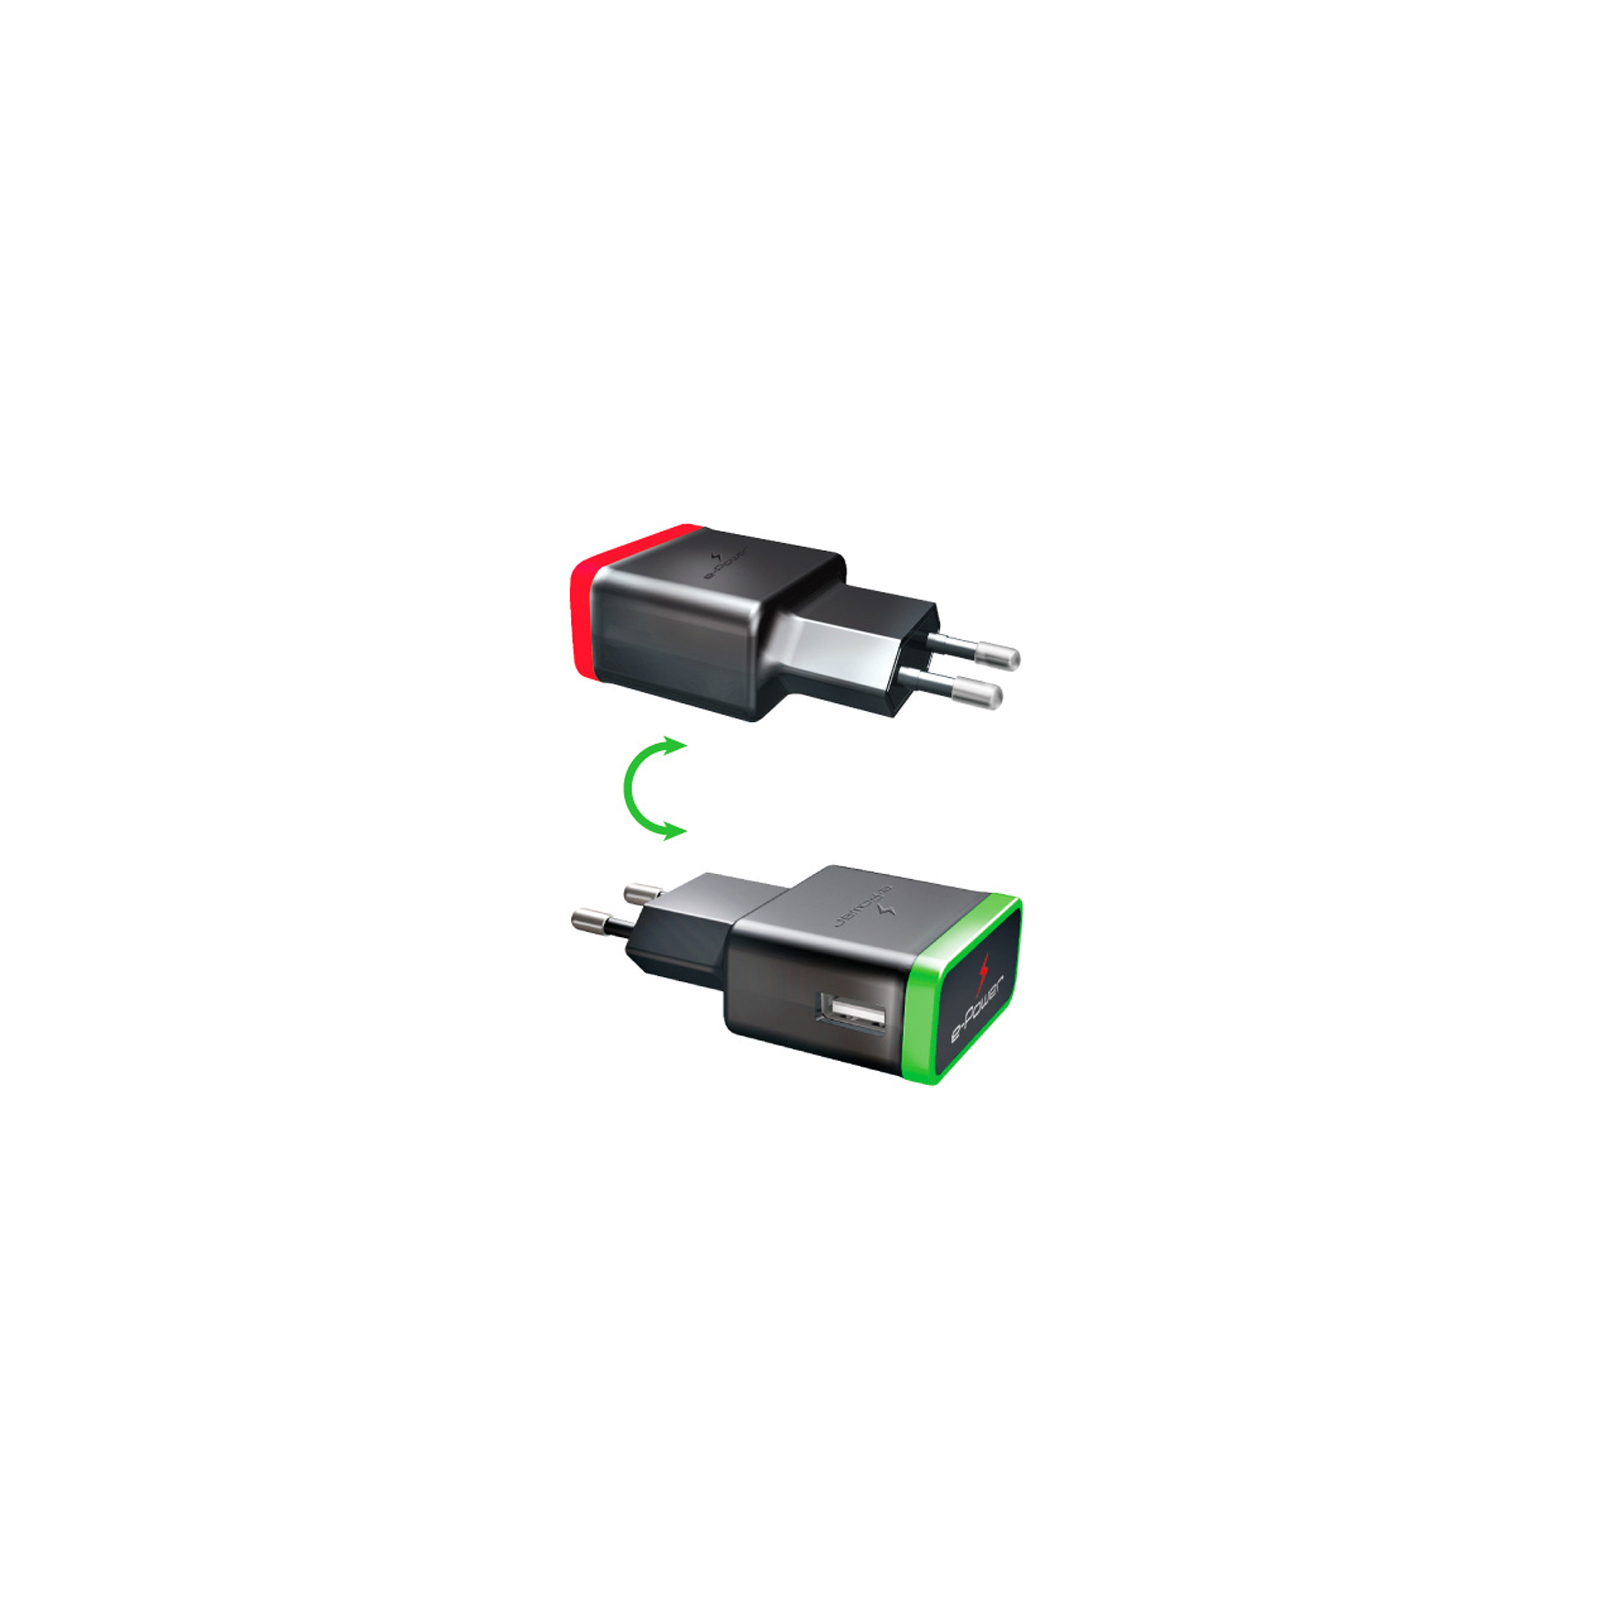 Зарядний пристрій E-power 1 * USB 1A + смарт кабель (EP721HAS) зображення 2